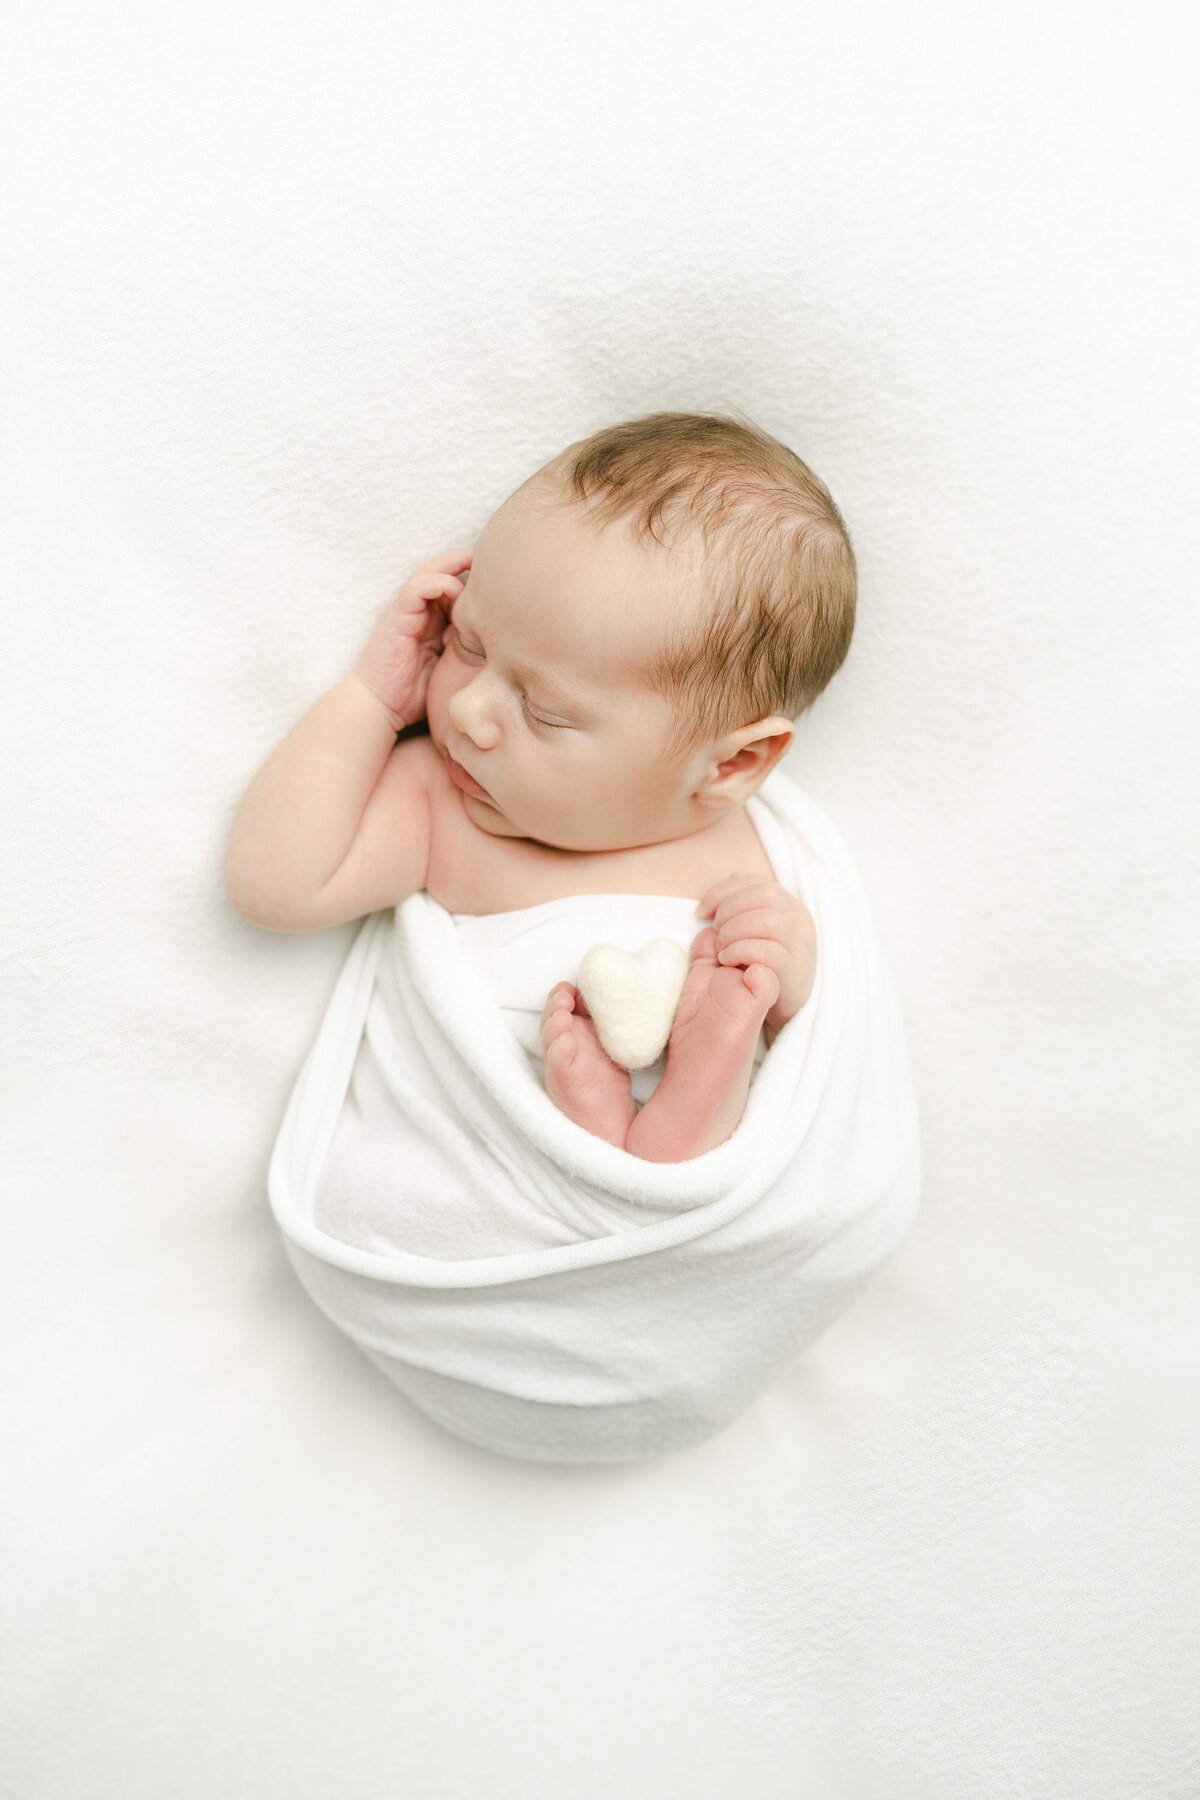 lehigh-valley-newborn-photographer-julian-26